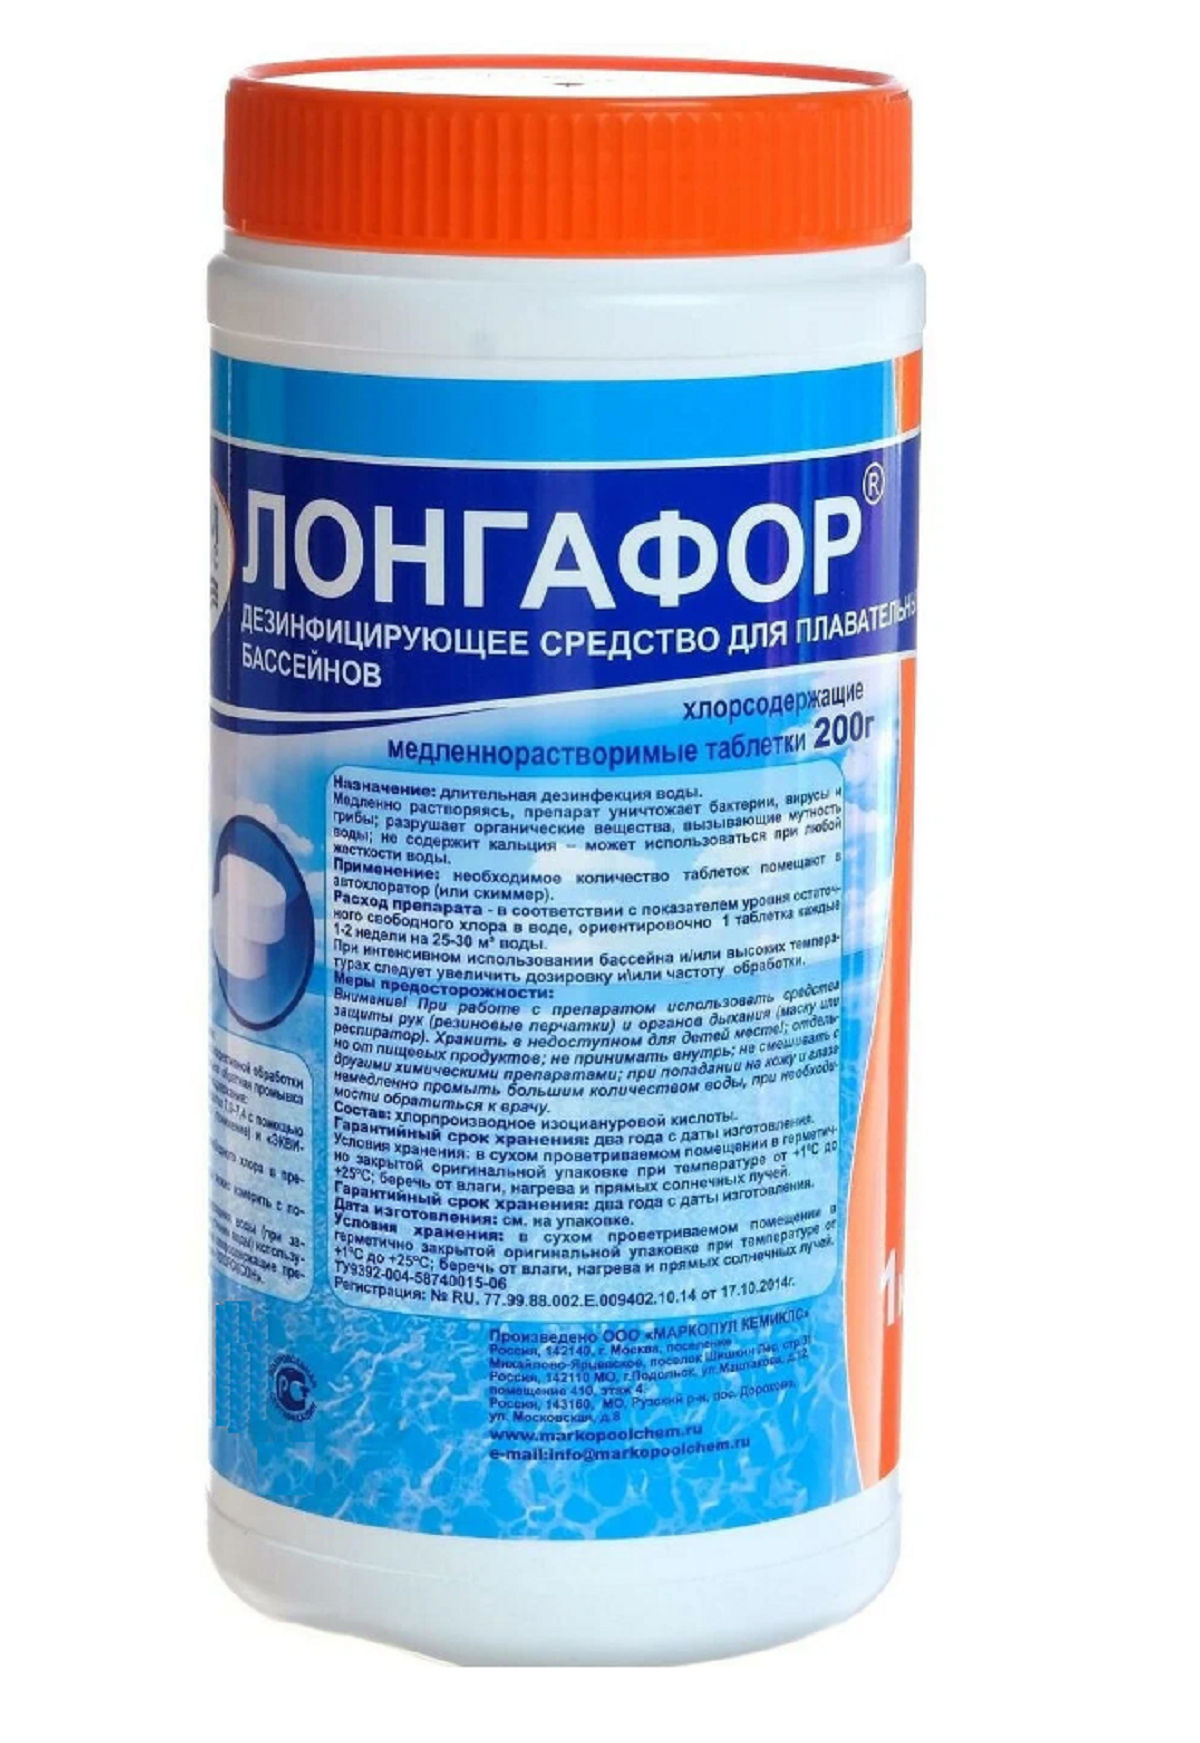 Лонгафор 200гр таблетки 1кг (медленнорастворимый хлор)